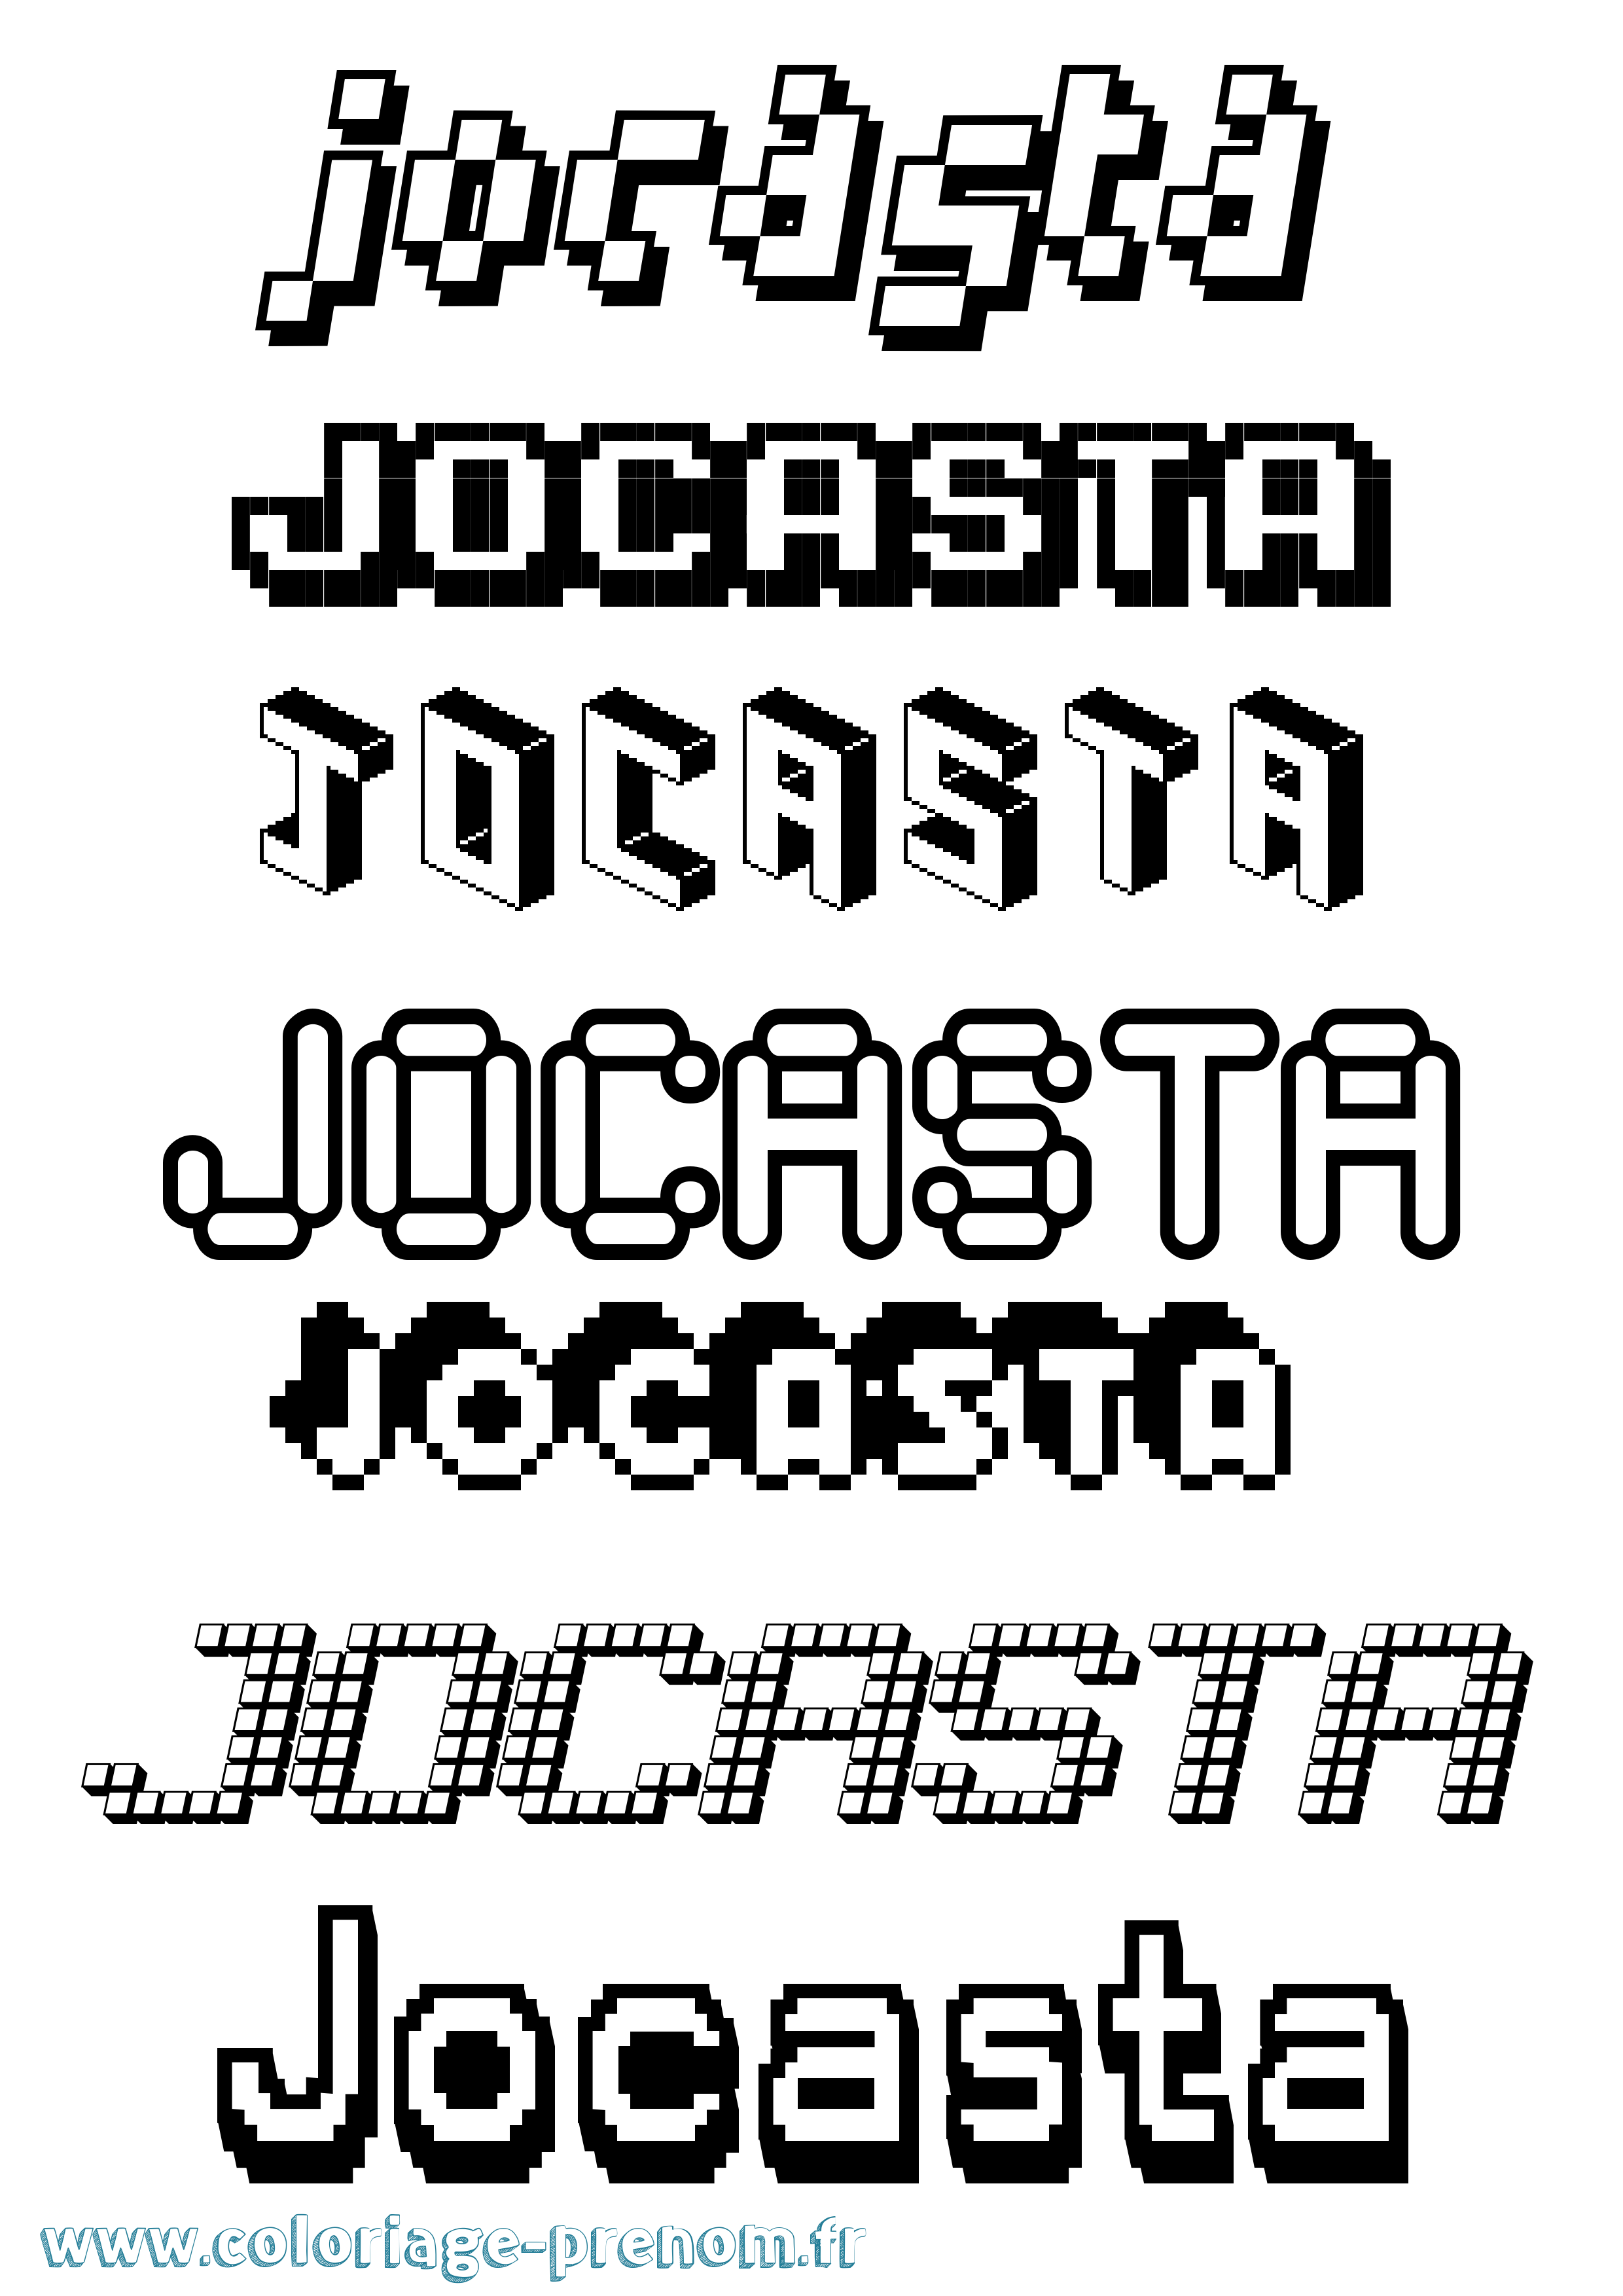 Coloriage prénom Jocasta Pixel